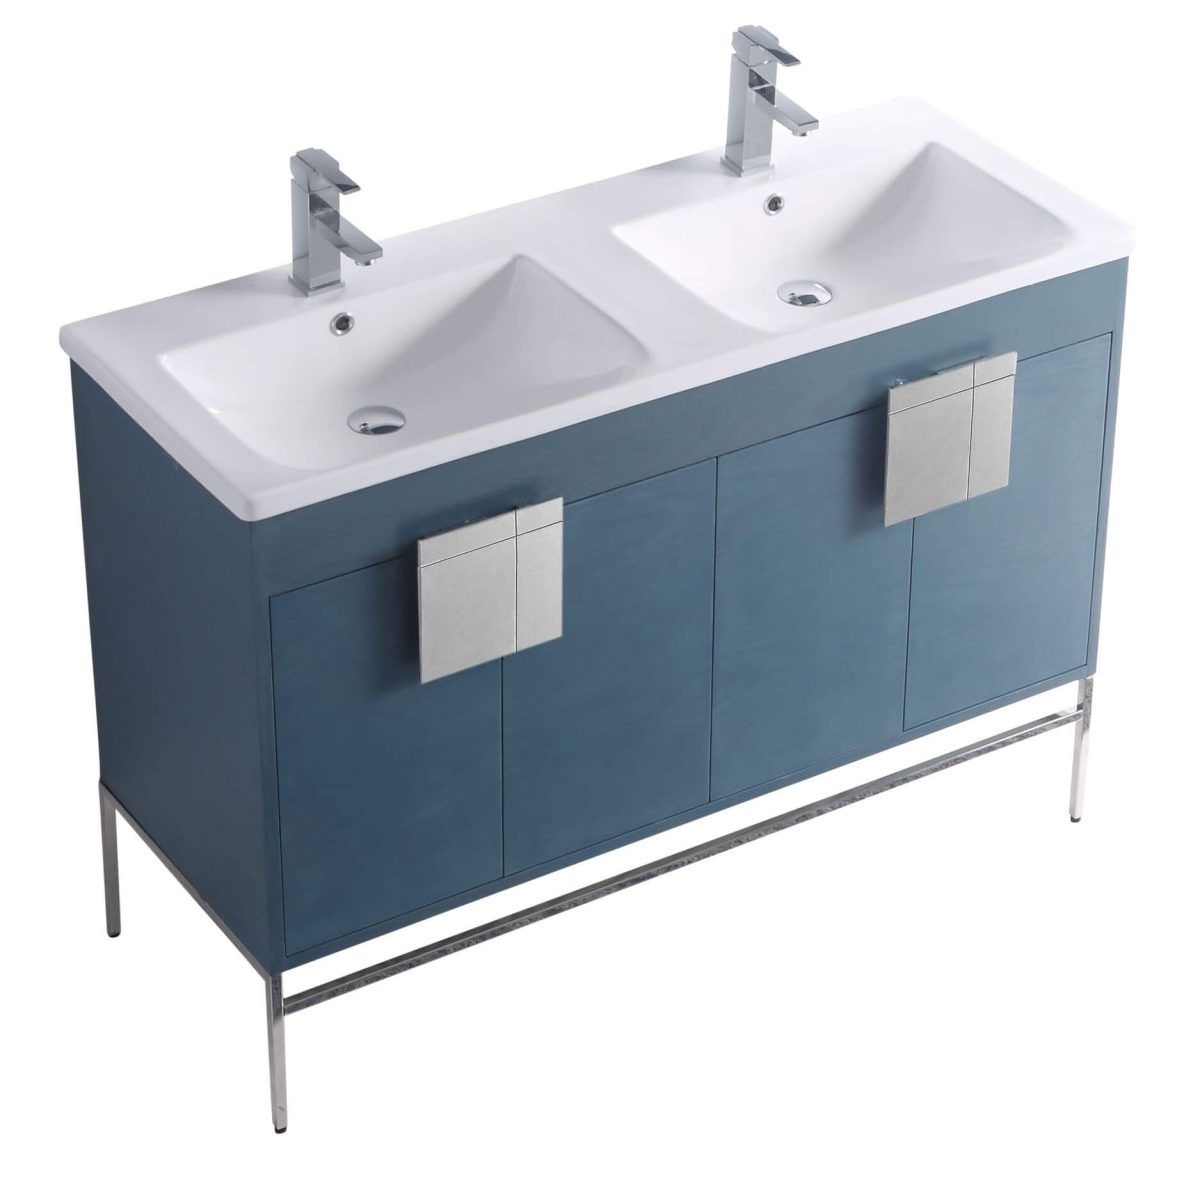 Shawbridge 48" Modern Double Bathroom Vanity  French Blue with Polished Chrome Hardware